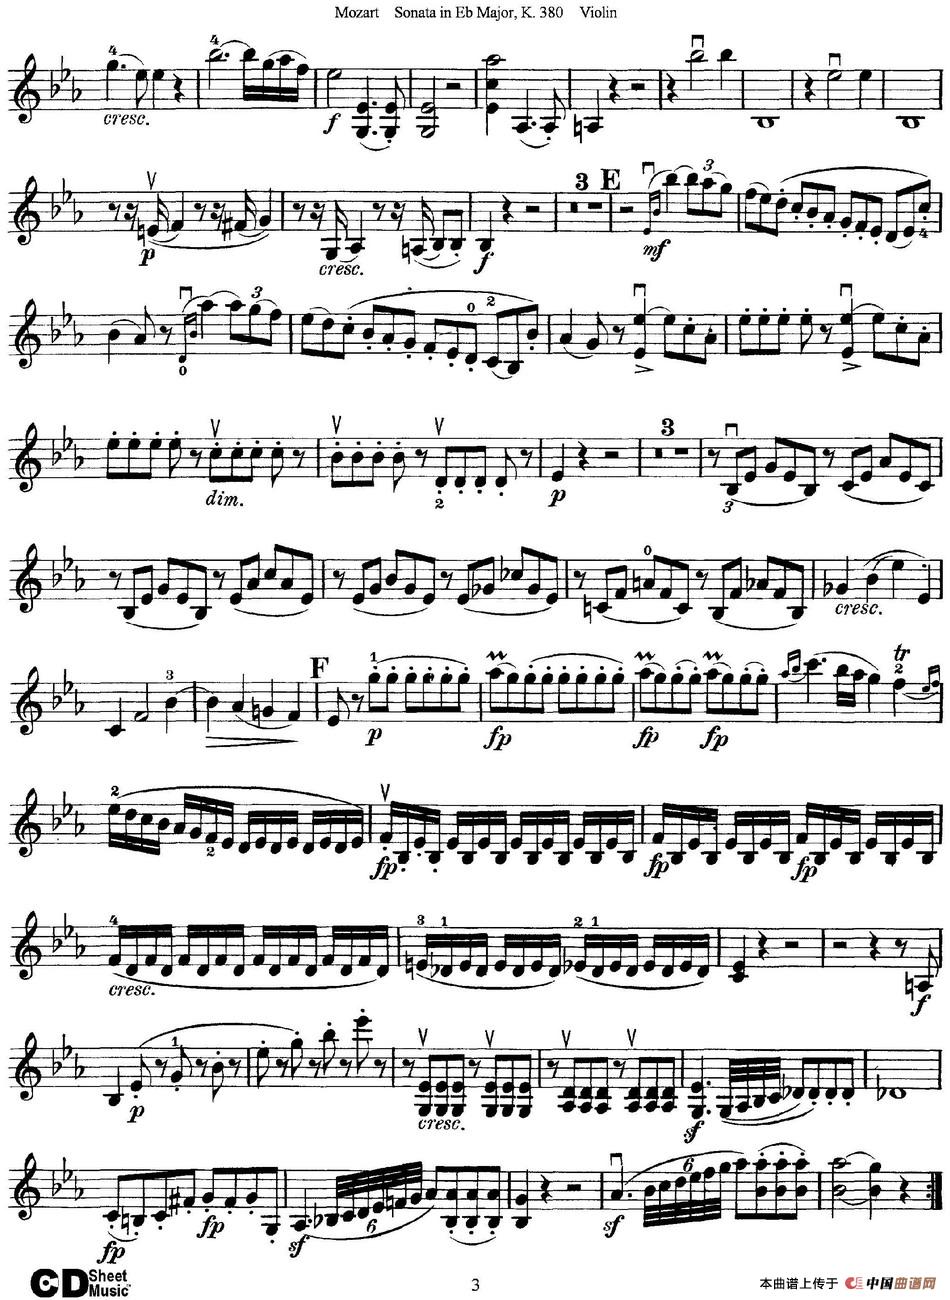 Violin Sonata in Eb Major K.380